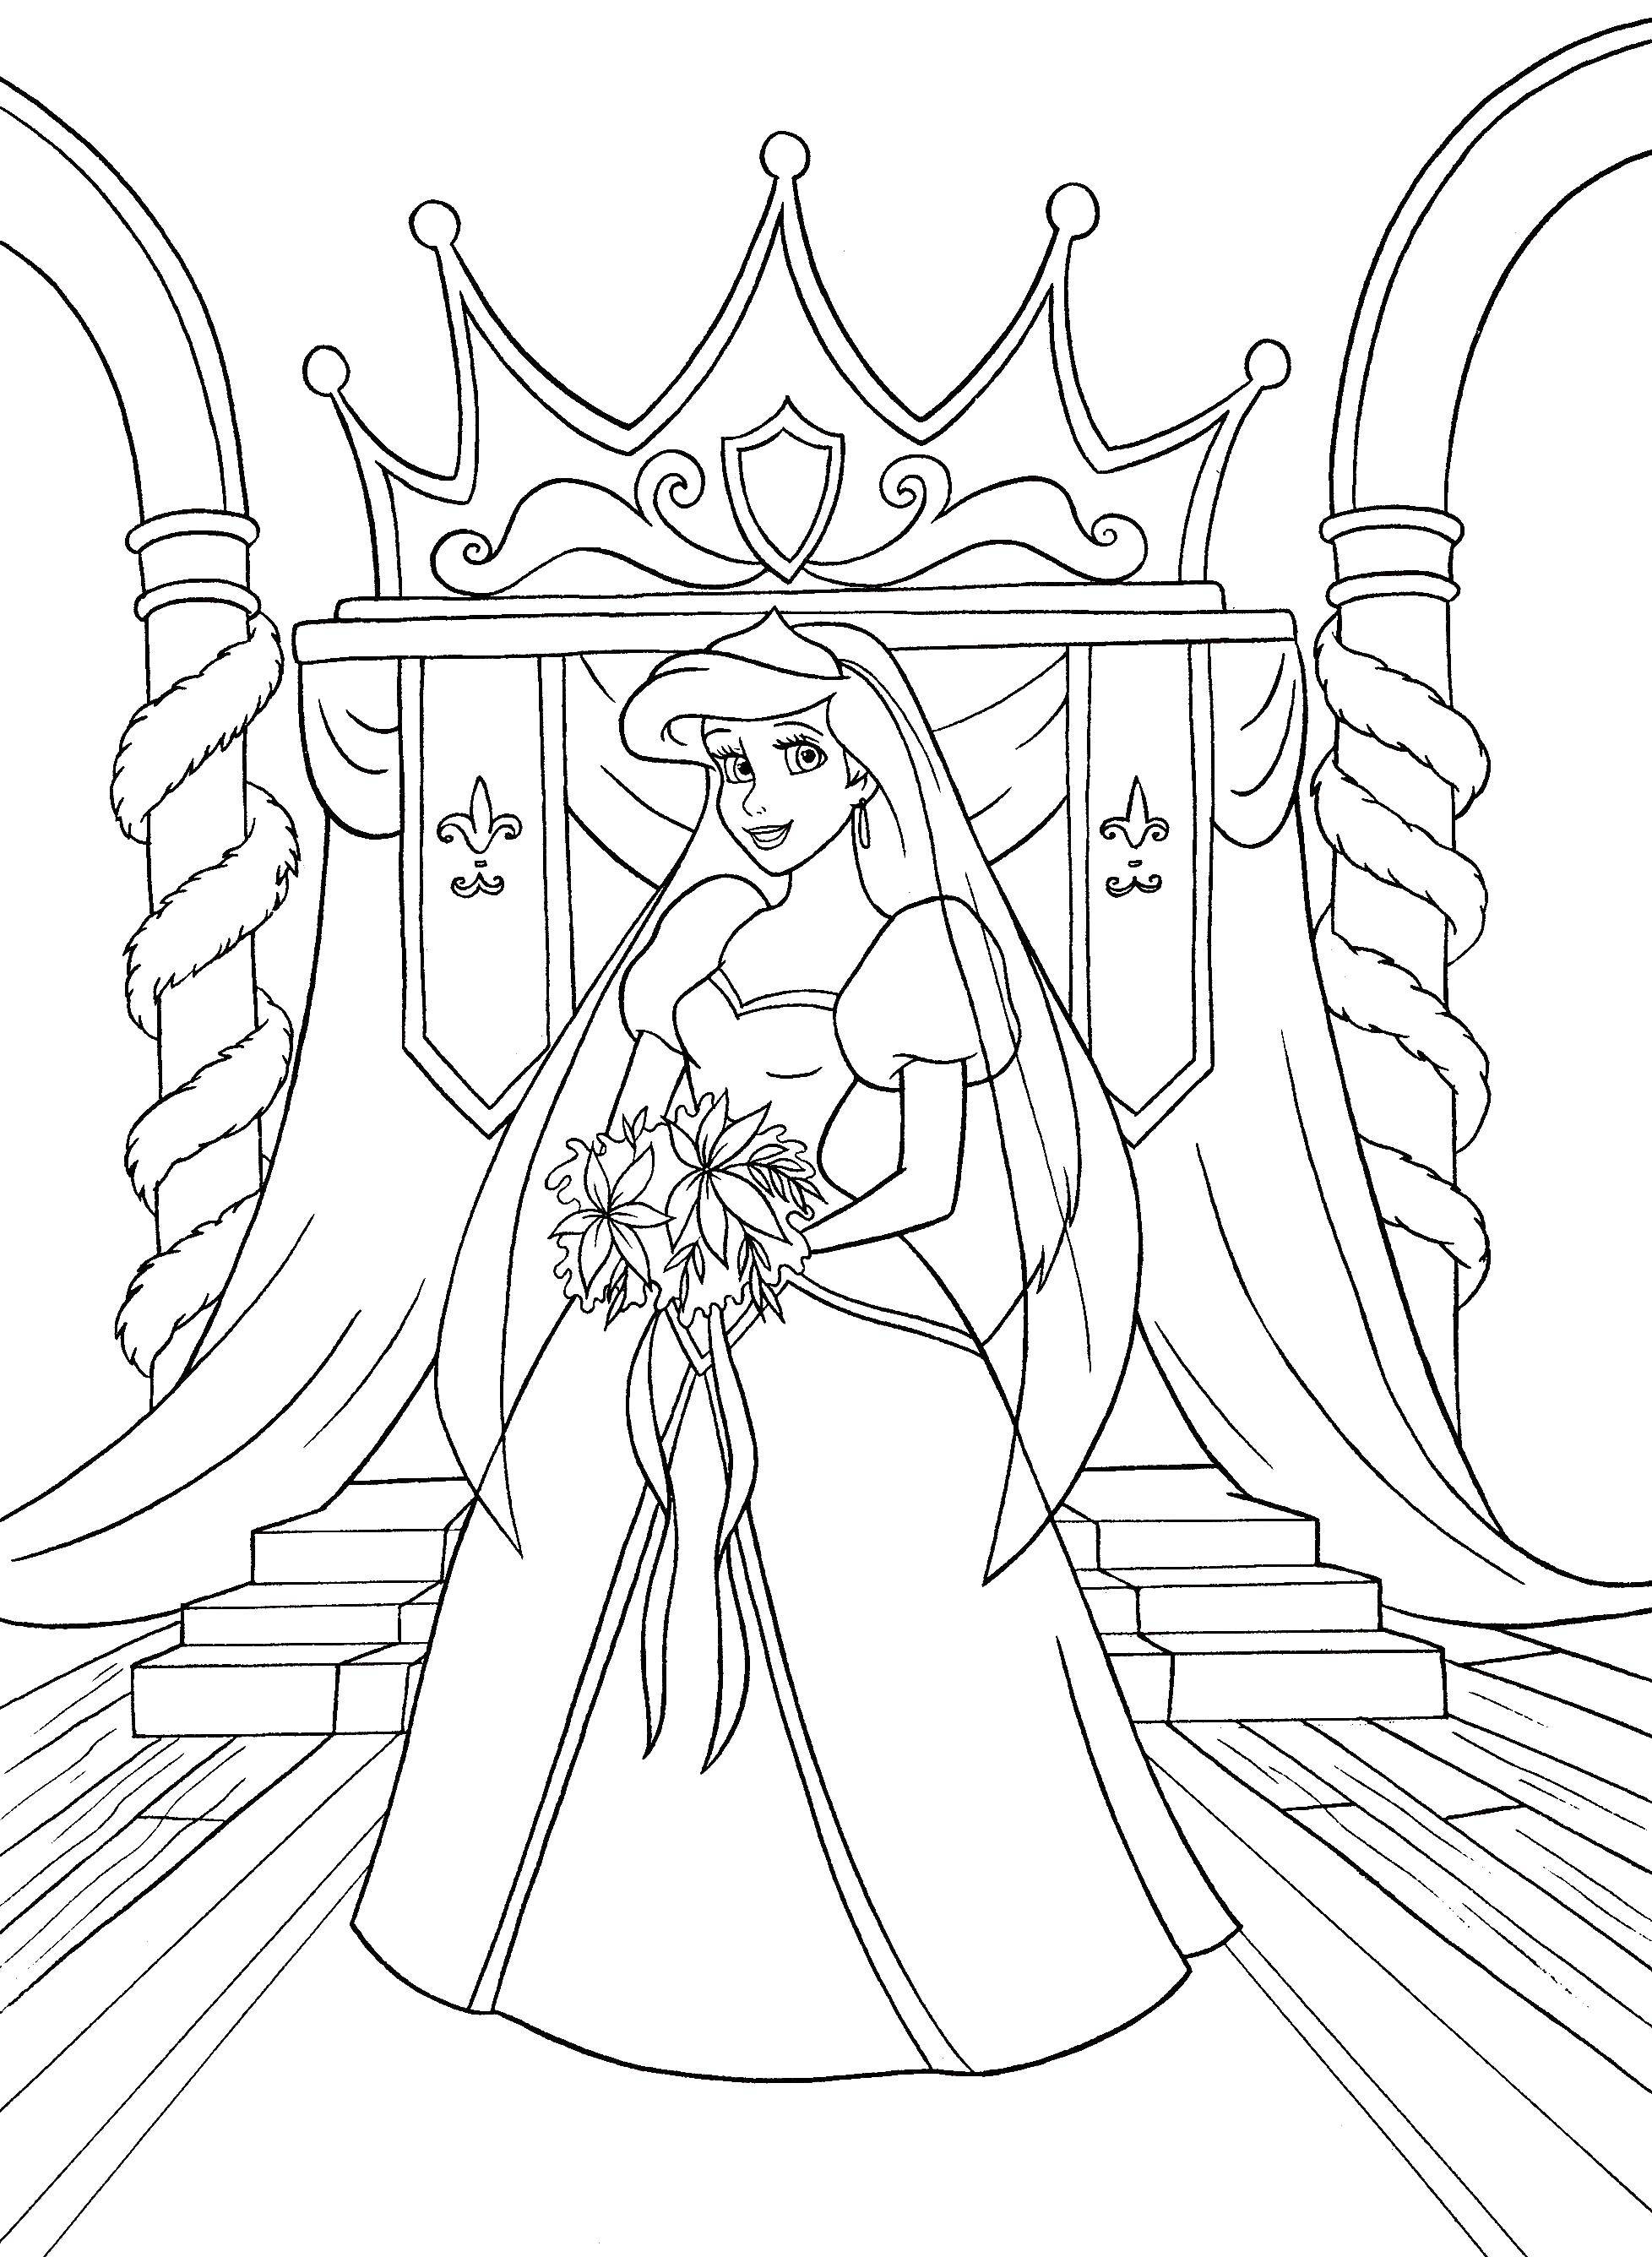 Название: Раскраска Невеста принцесса. Категория: Принцессы. Теги: принцессы, невесты, мультфильмы.